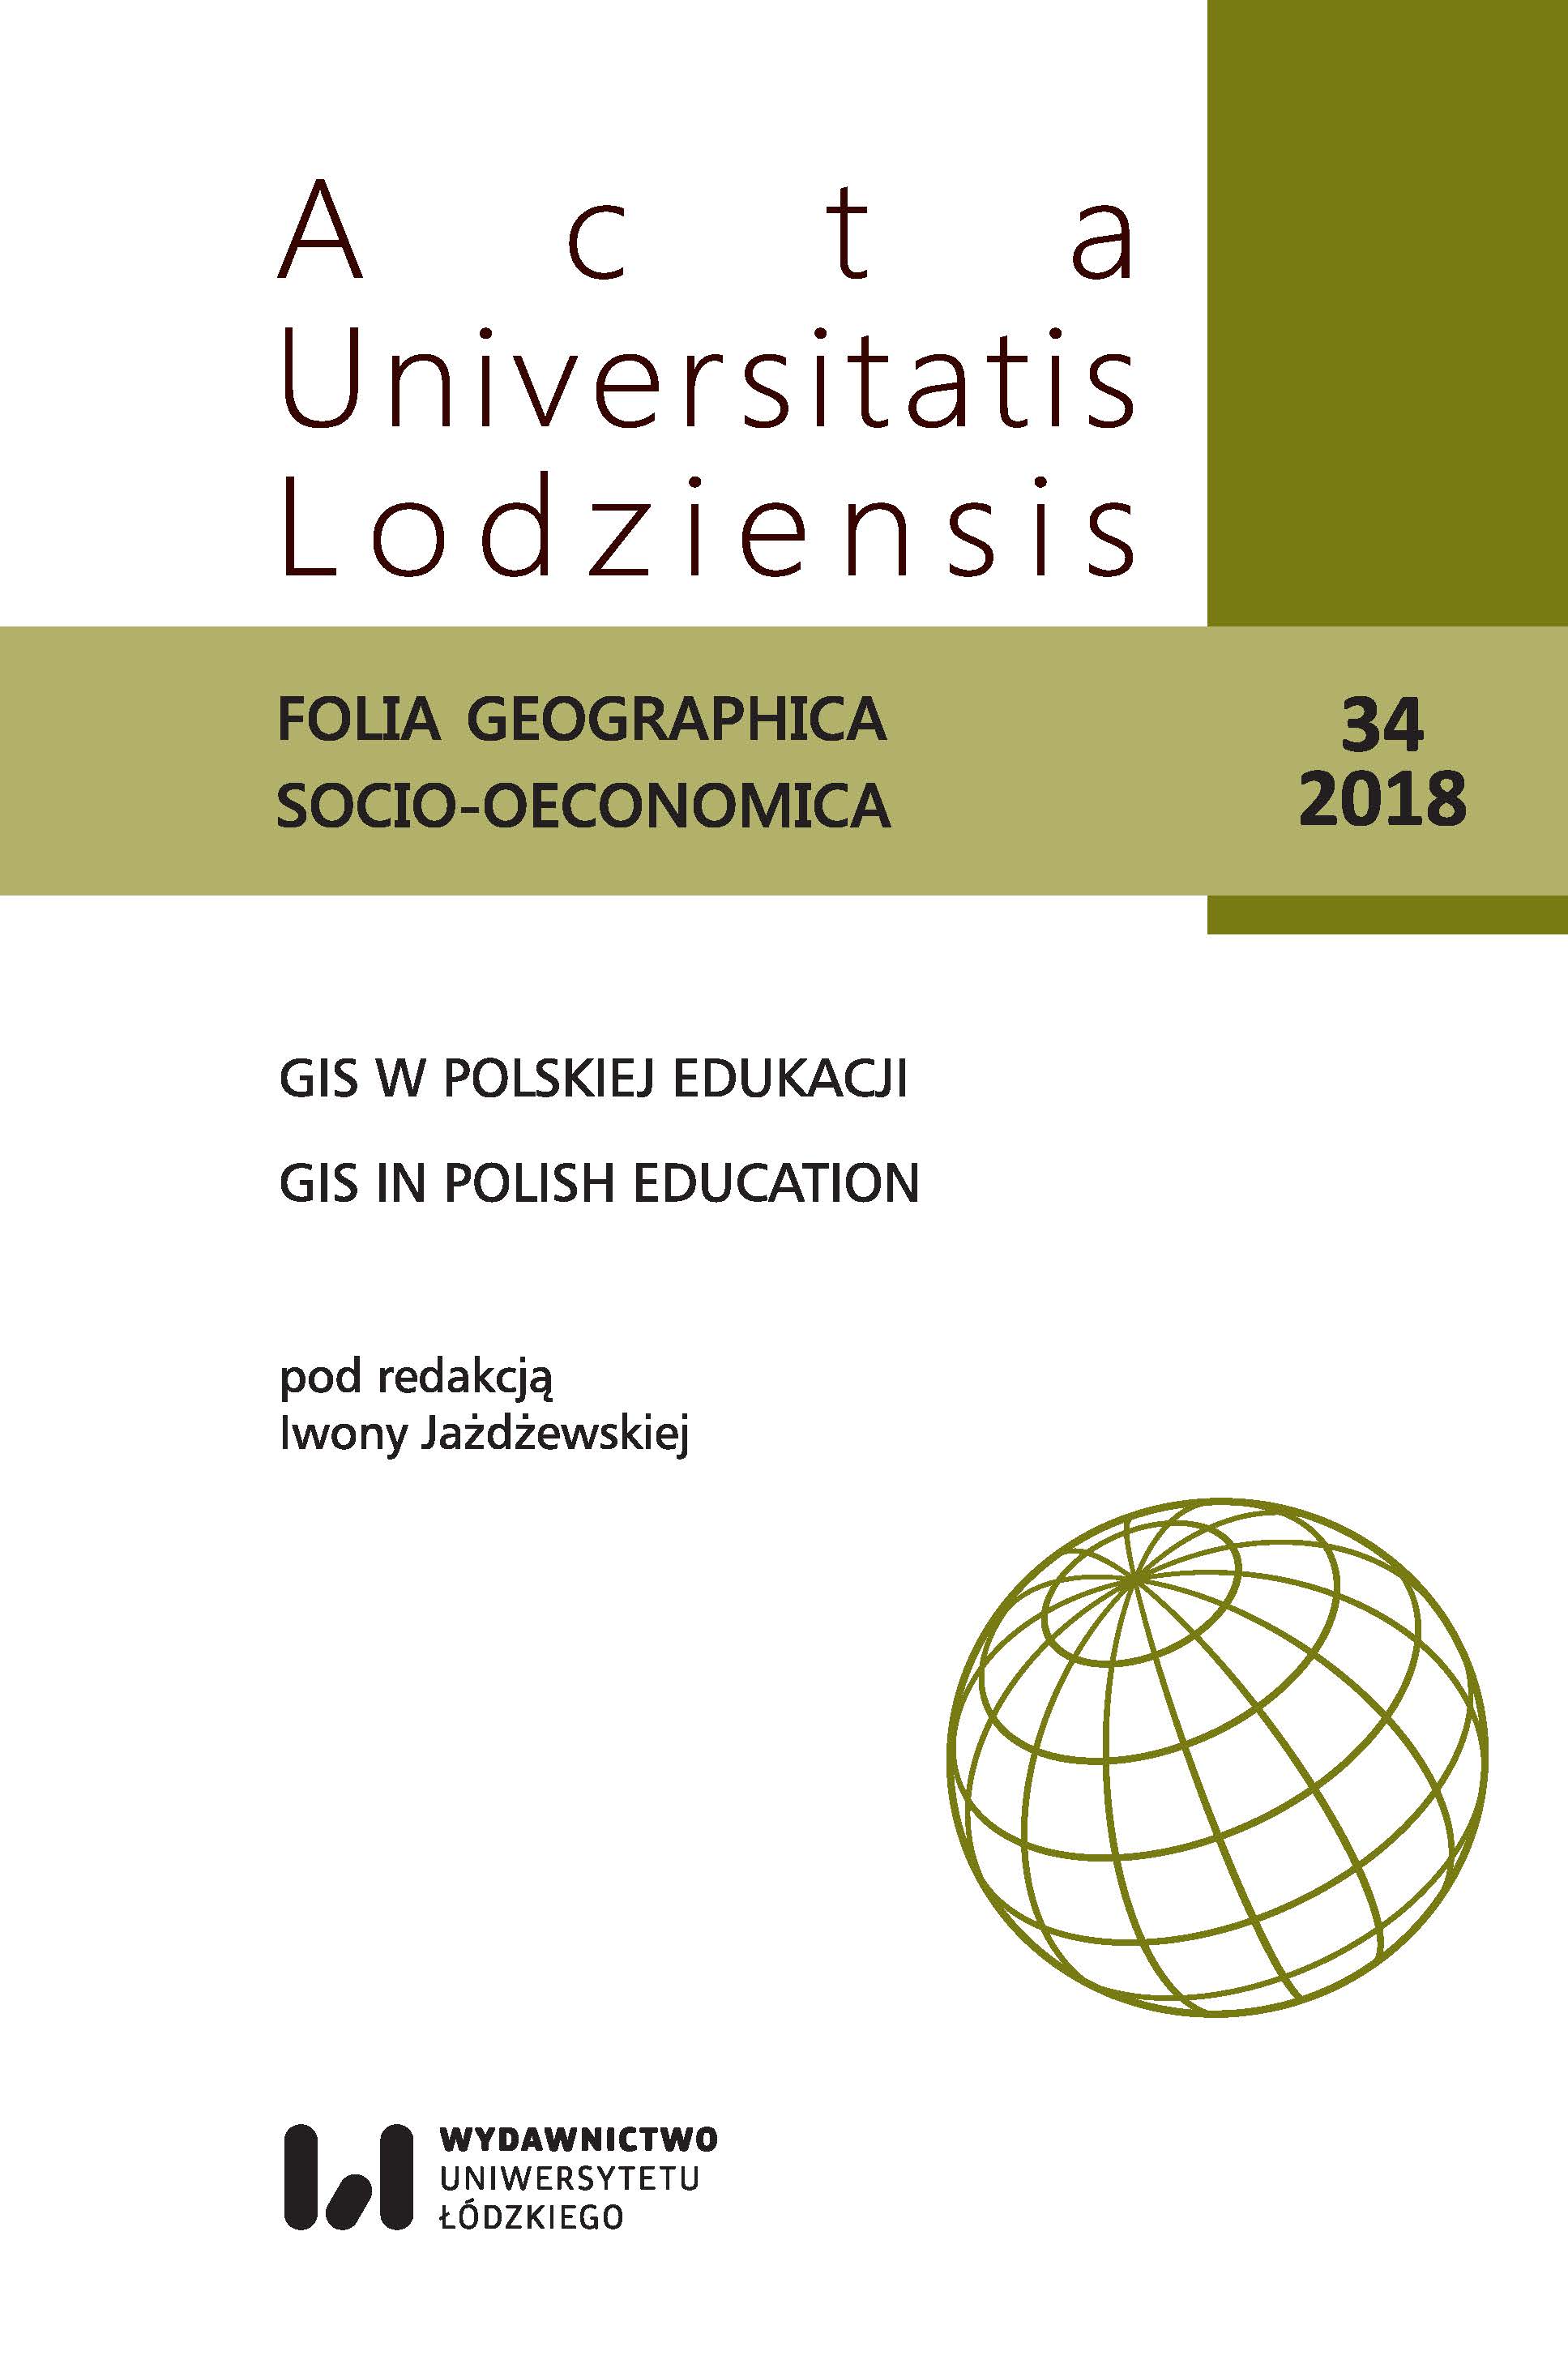 Kształcenie na kierunkach studiów geoinformacja i geoinformatyka w wybranych uczelniach w Polsce